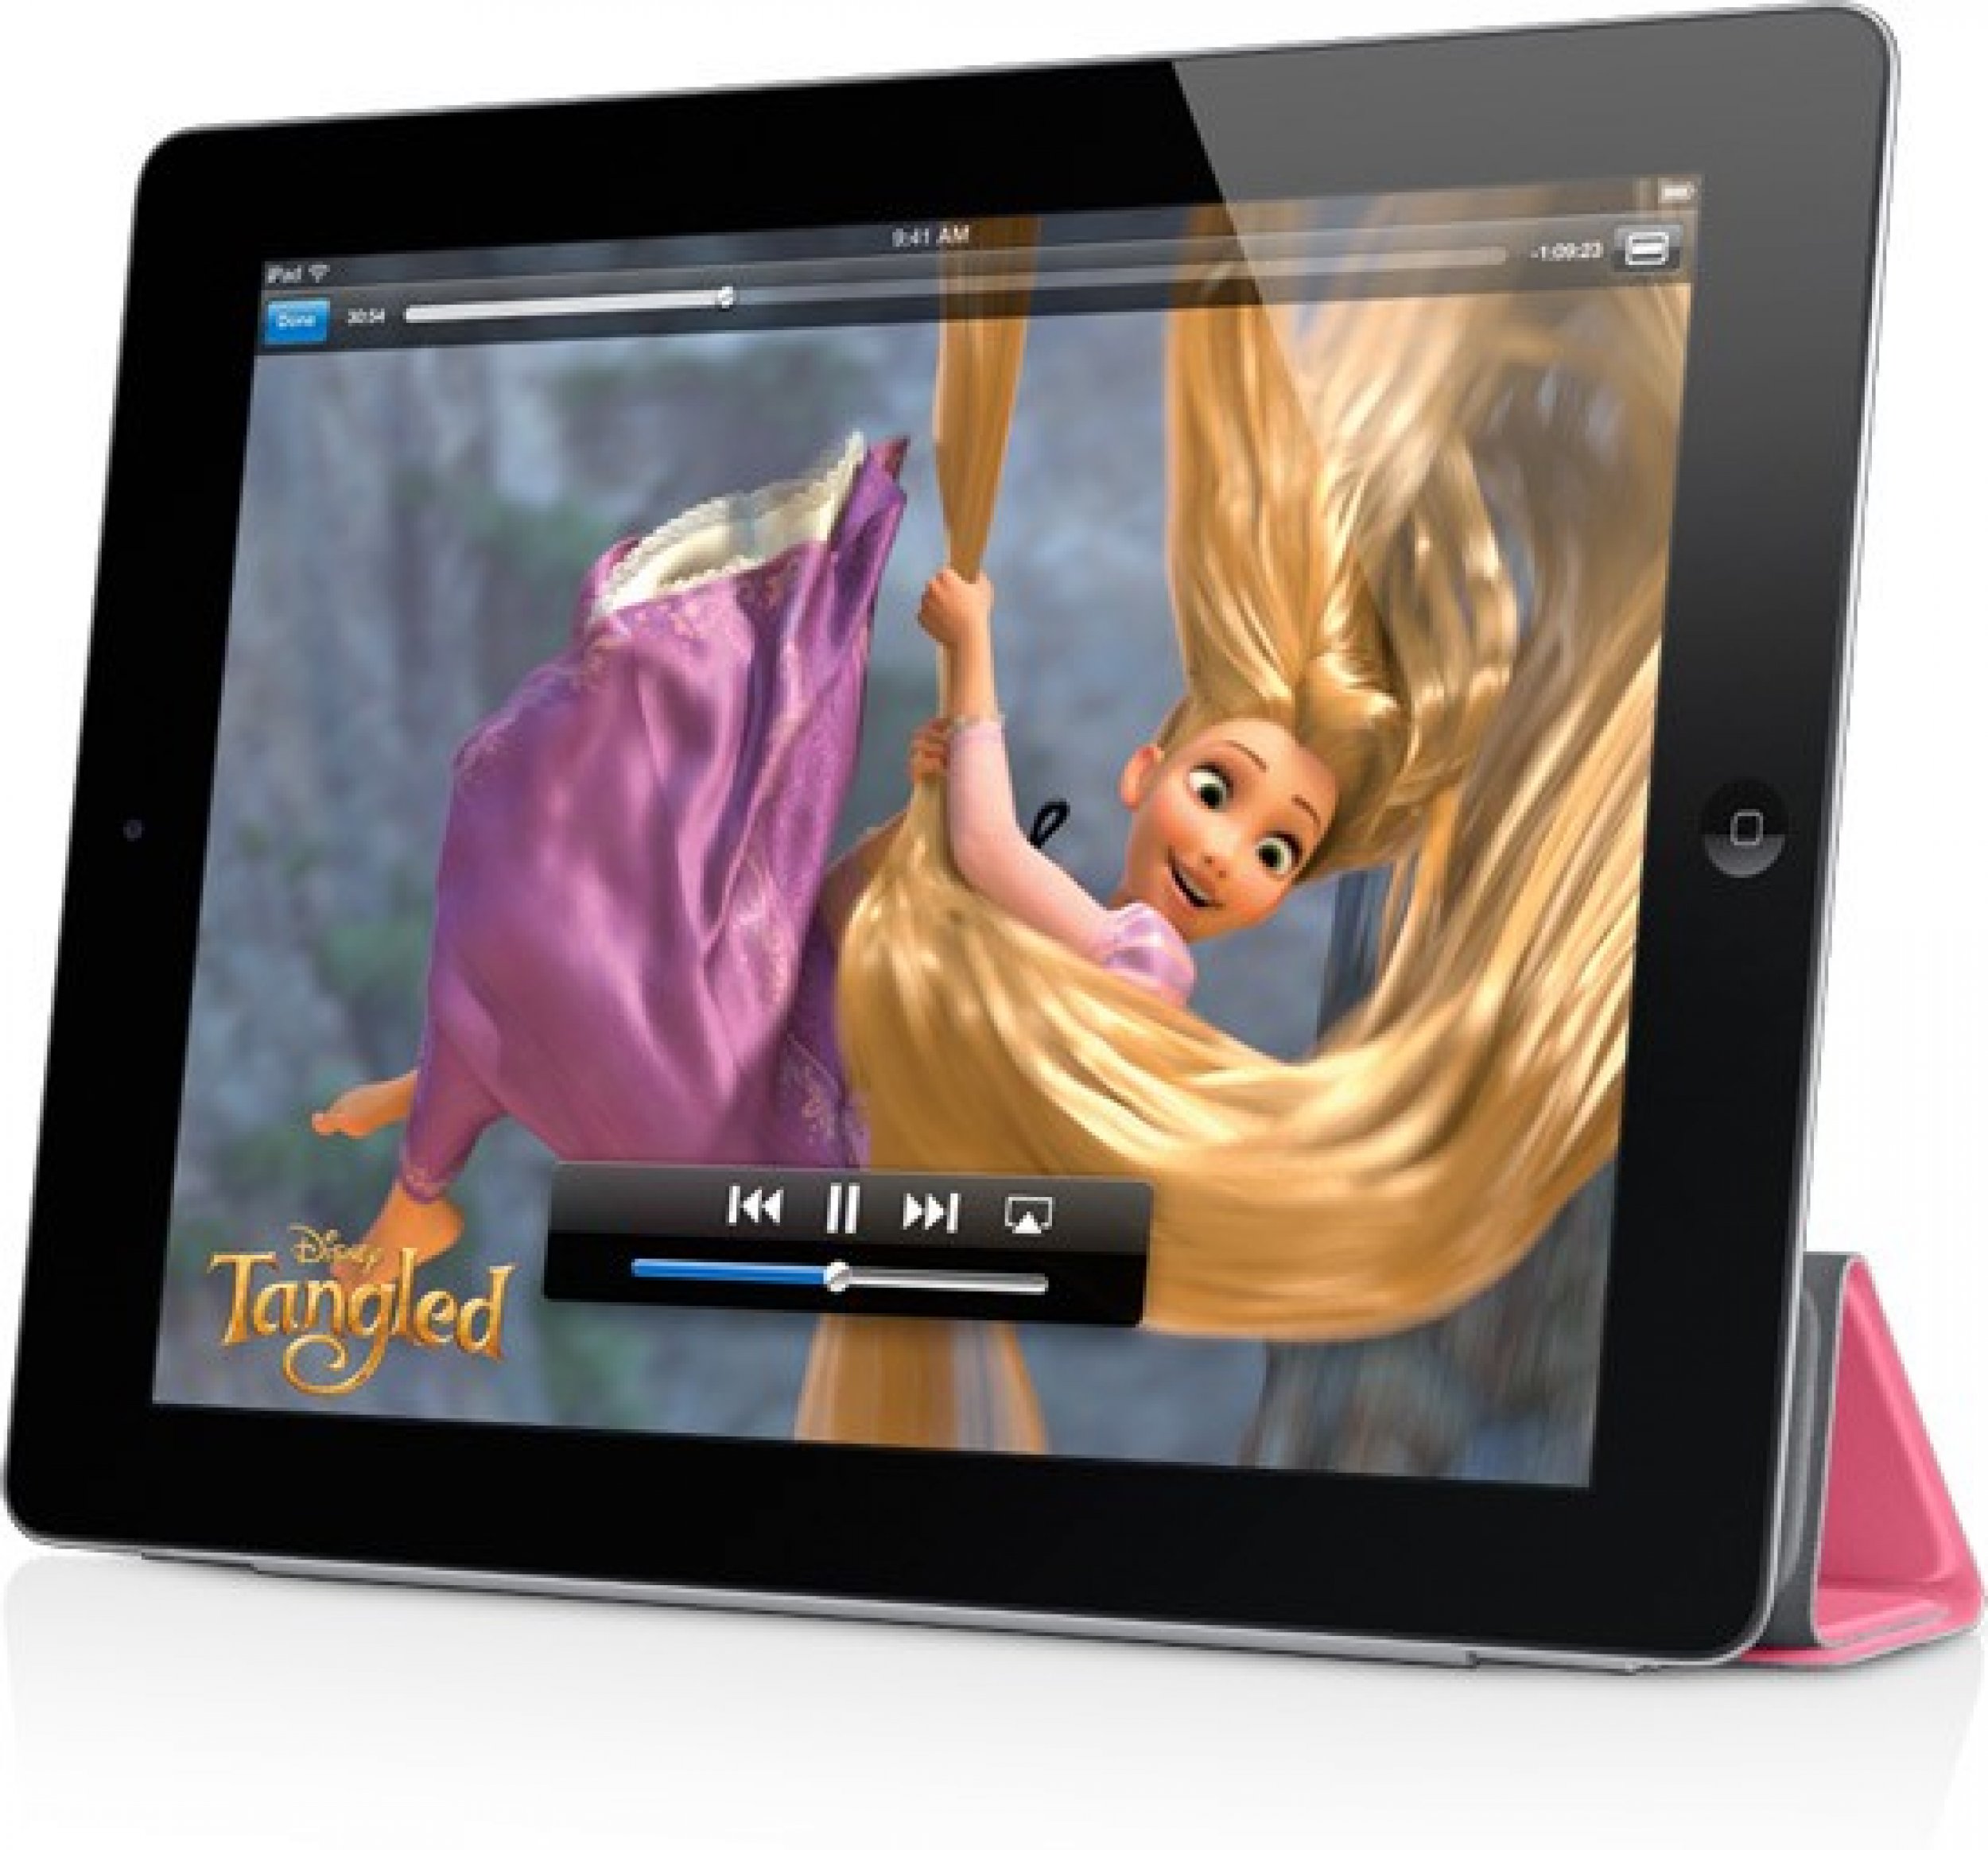 Apple iPad 2 on sale